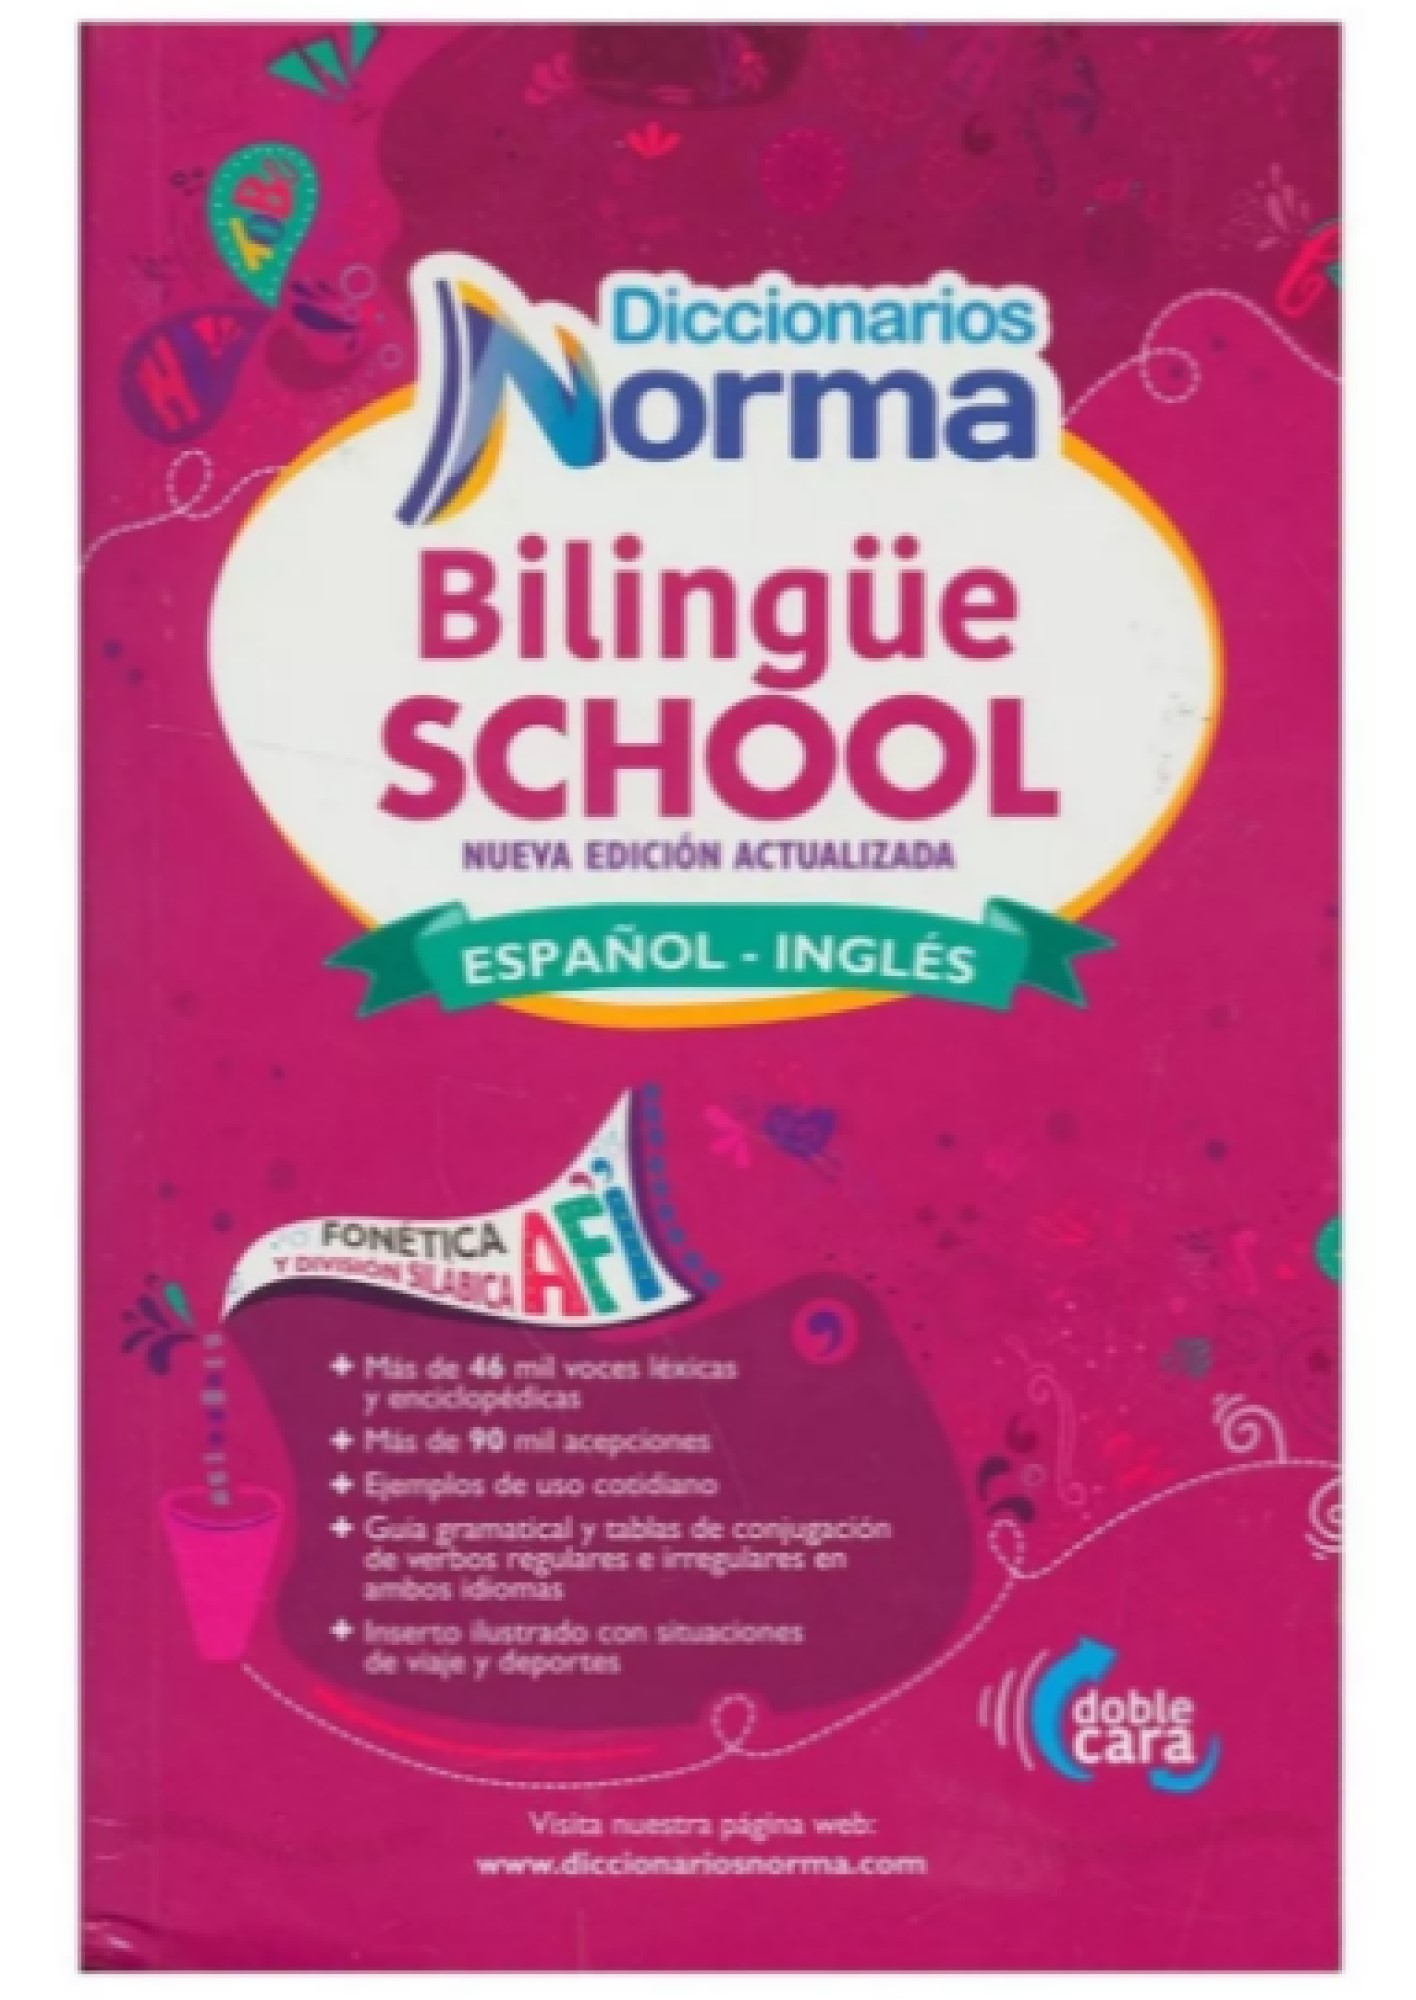 Diccionario Bilingue School Norma